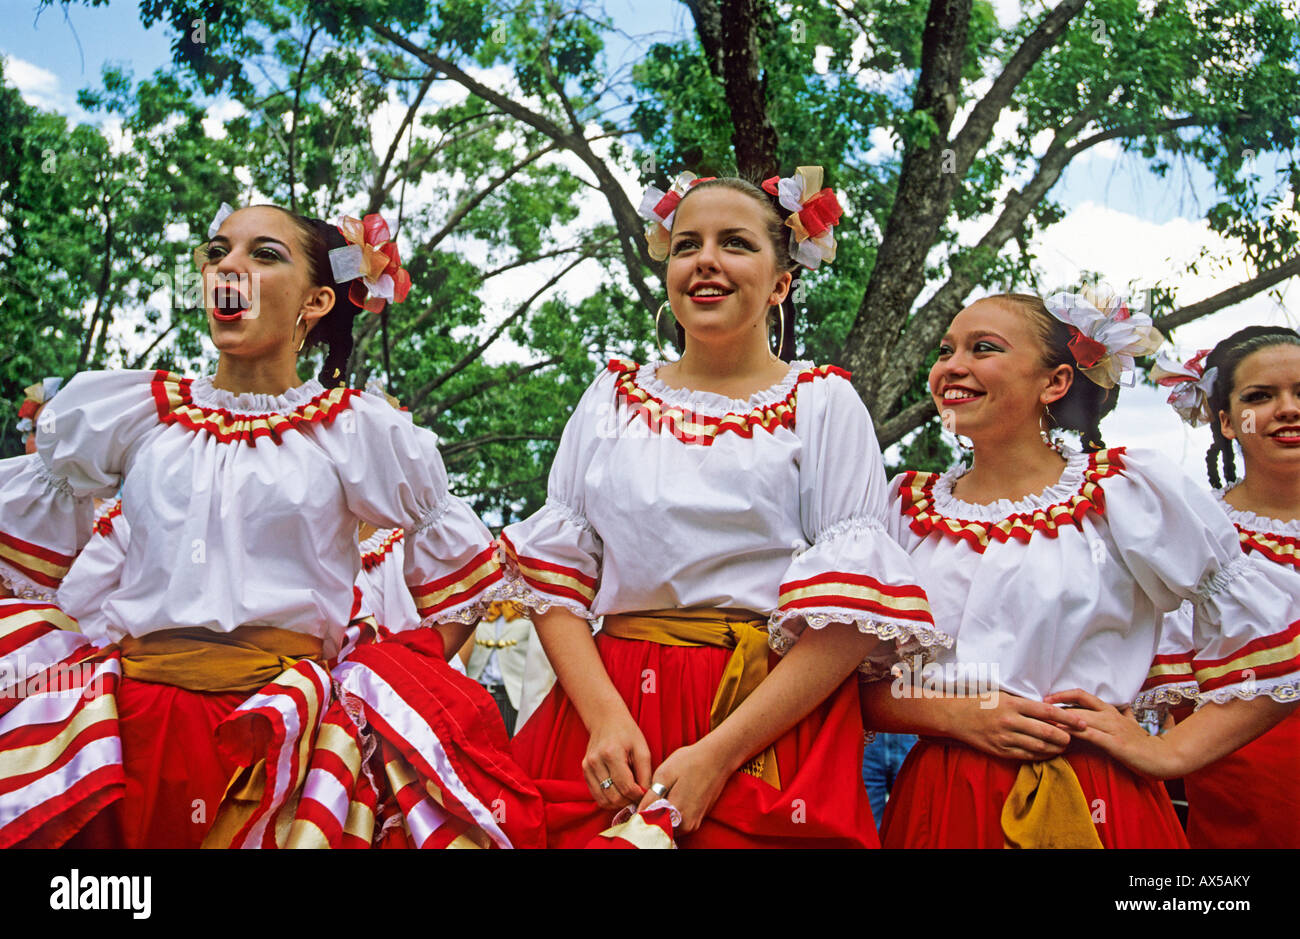 Les filles en espagnol costumes, Albuquerque, Nouveau Mexique, USA, Amérique Latine Banque D'Images